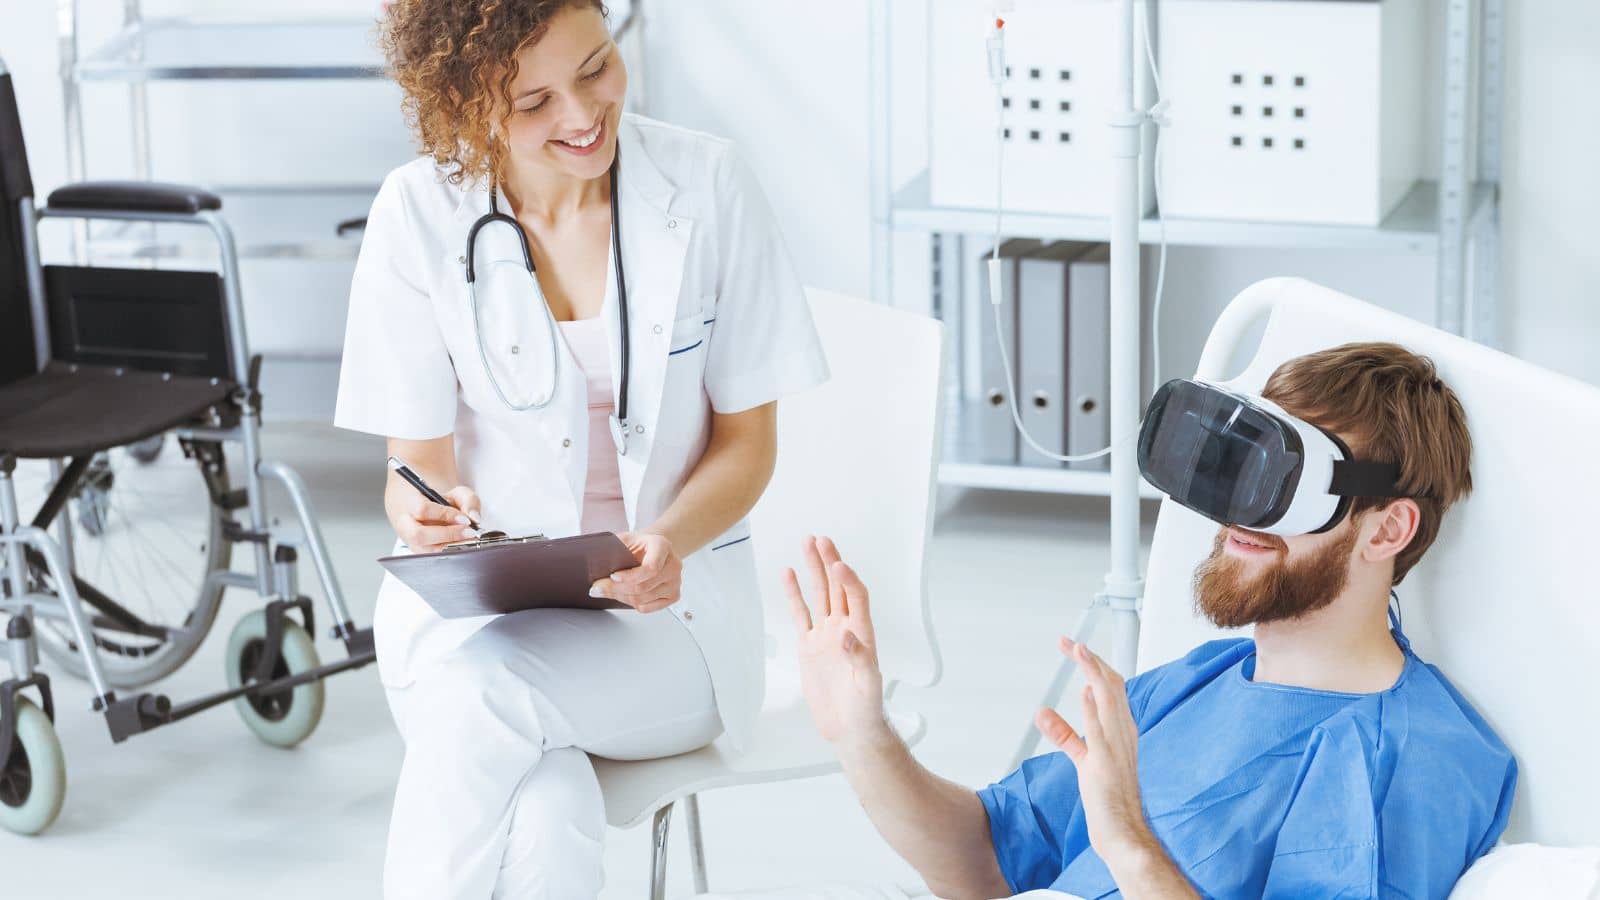 Realidad virtual en la medicina, innovación para mejorar la atención